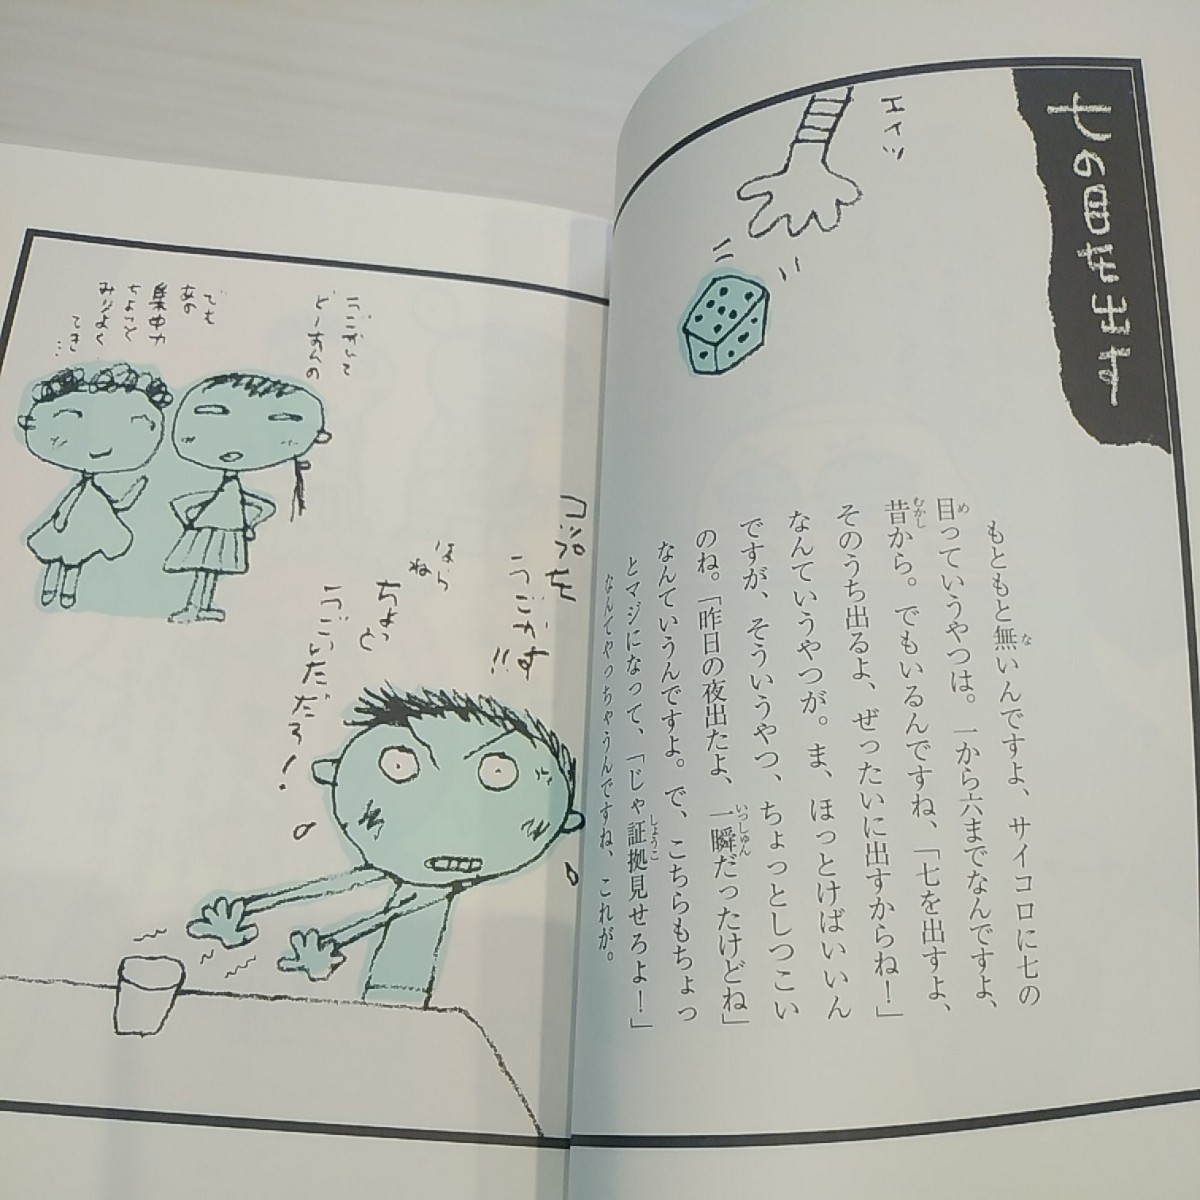 『創作ことわざ絵本』五味太郎定価1400円